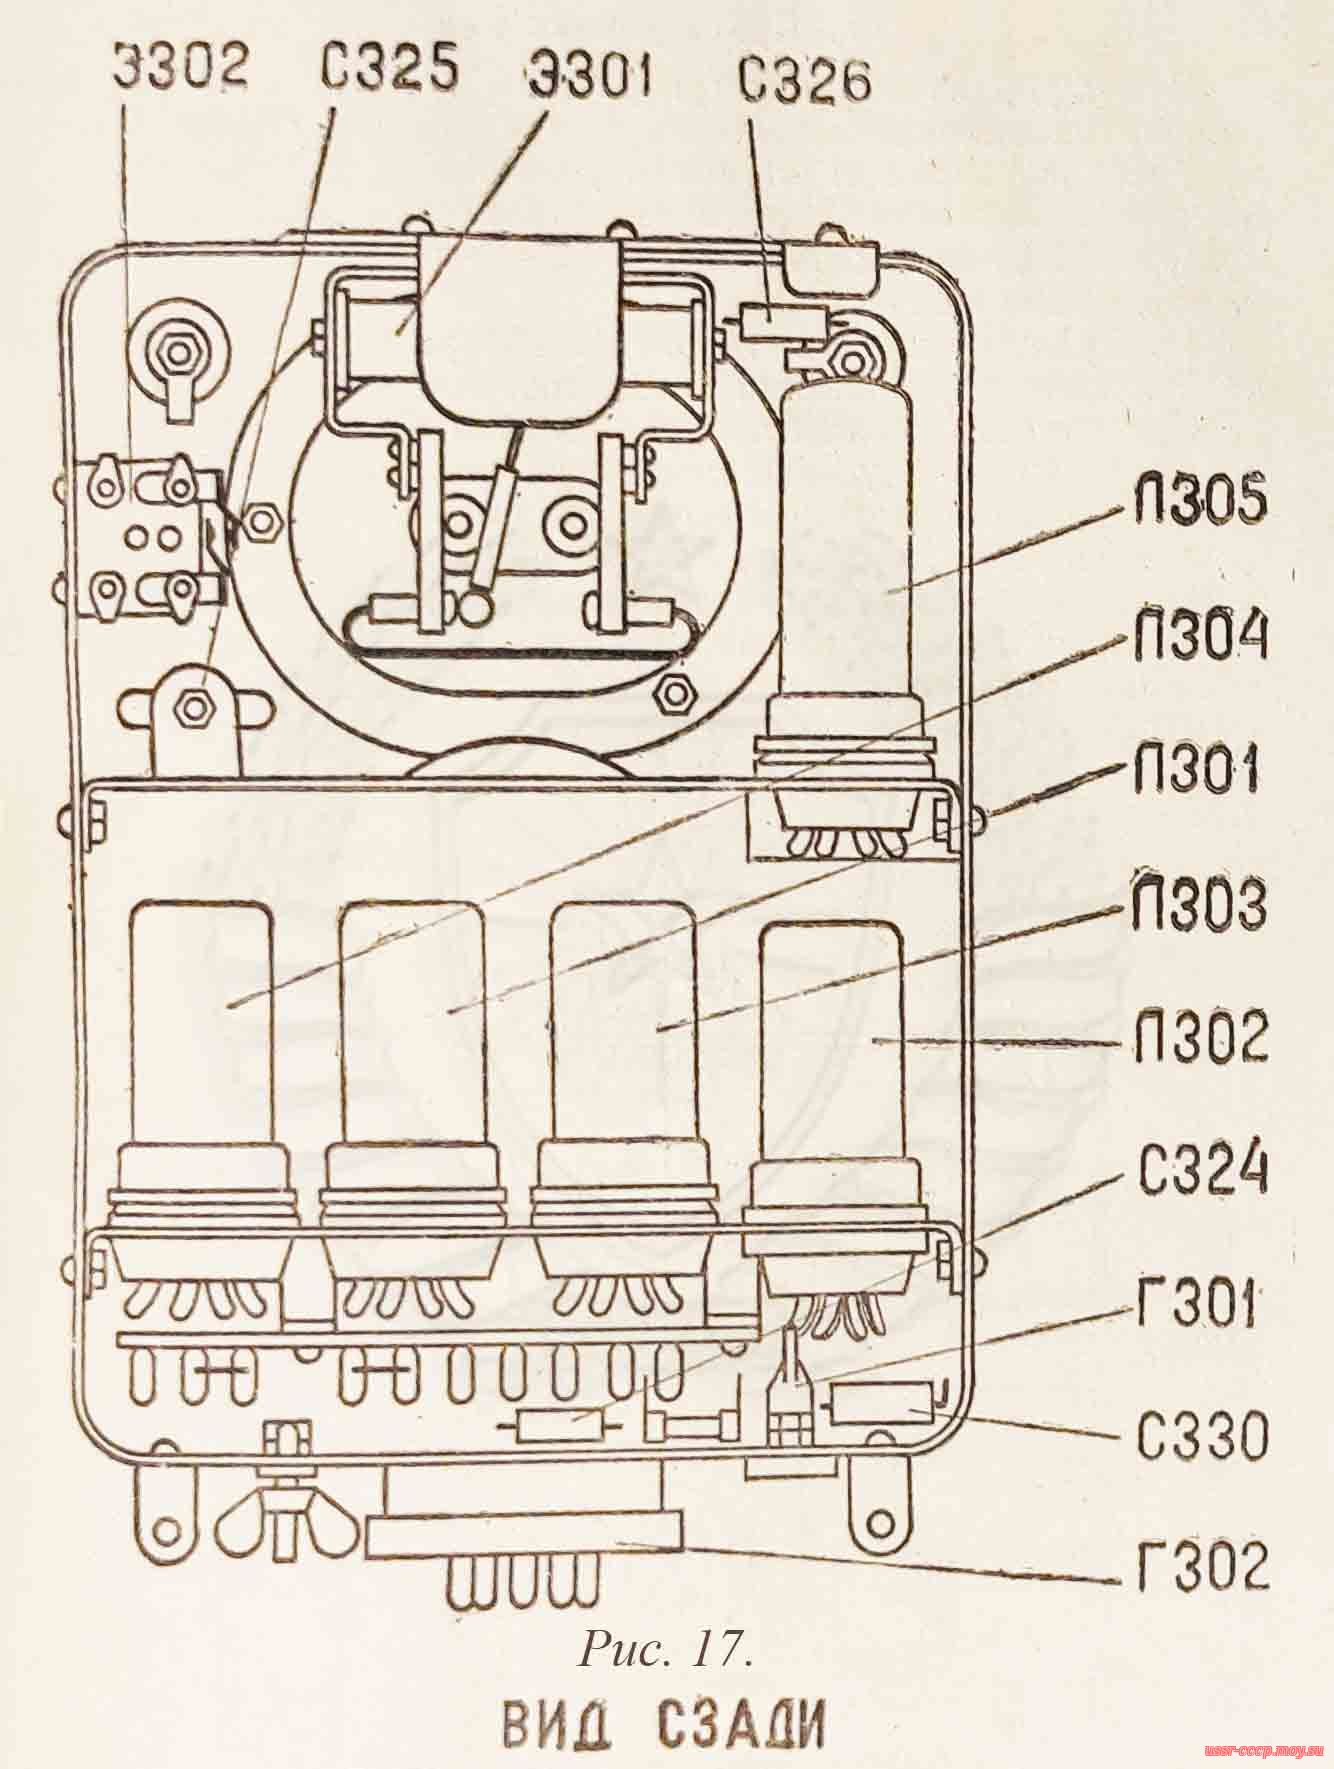 Рисунок 17. Антенный элемент (вид сзади), радиопередатчика Р-806.